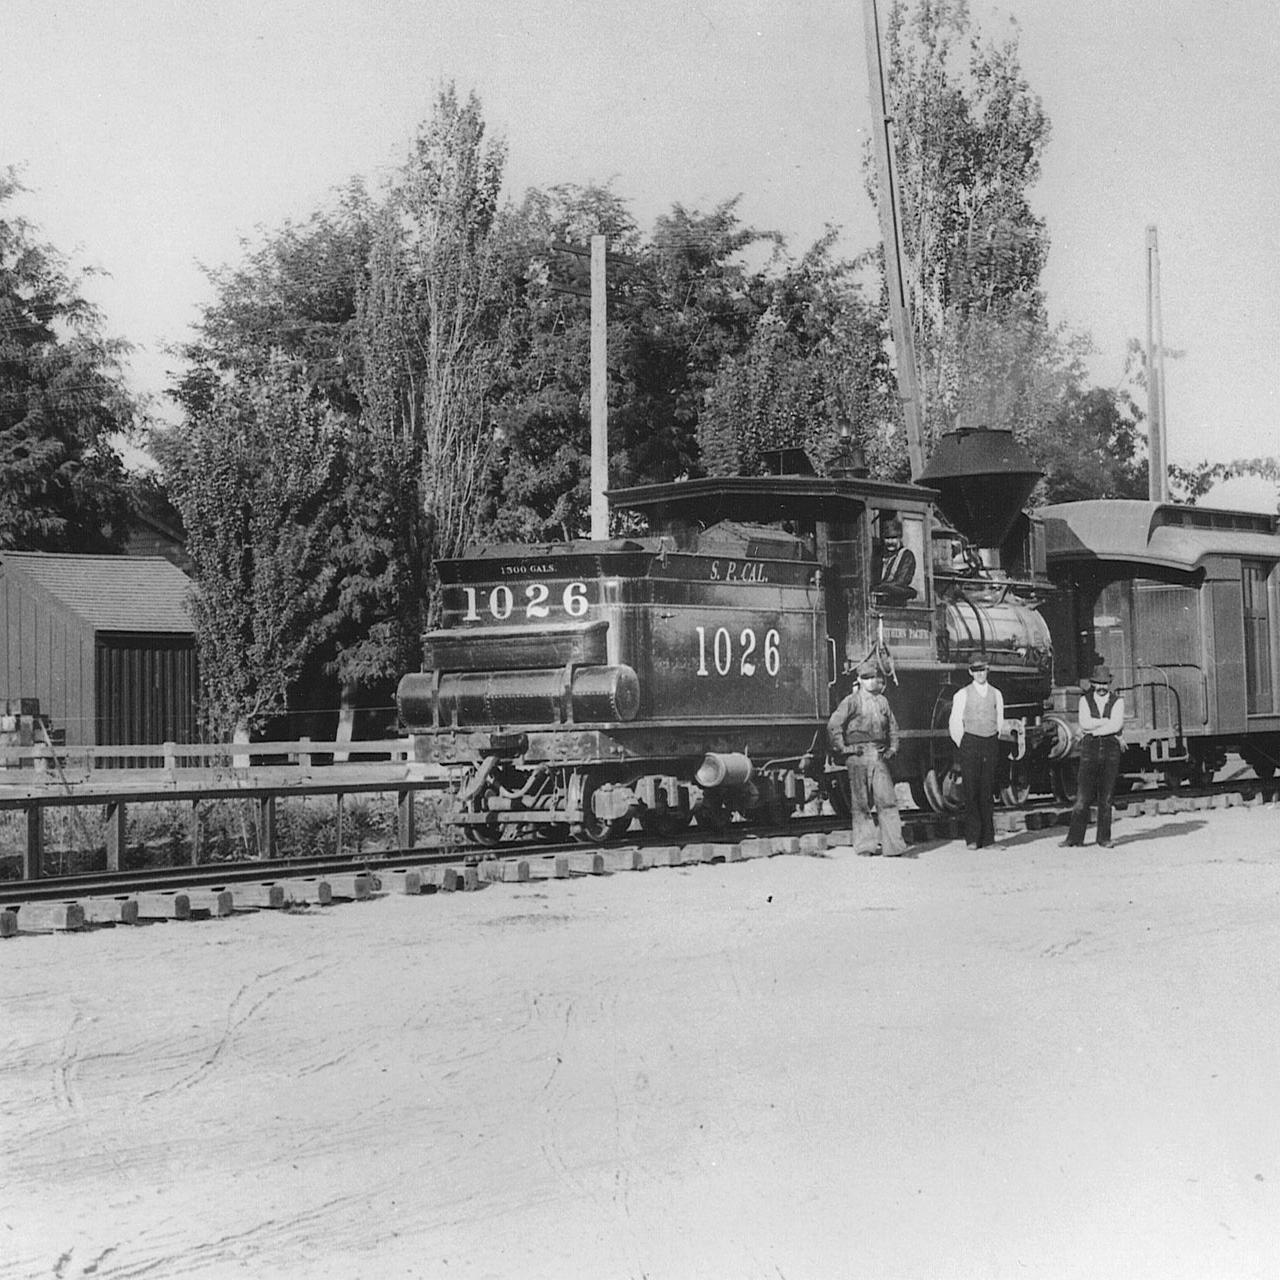 Leaving Lodi in 1903